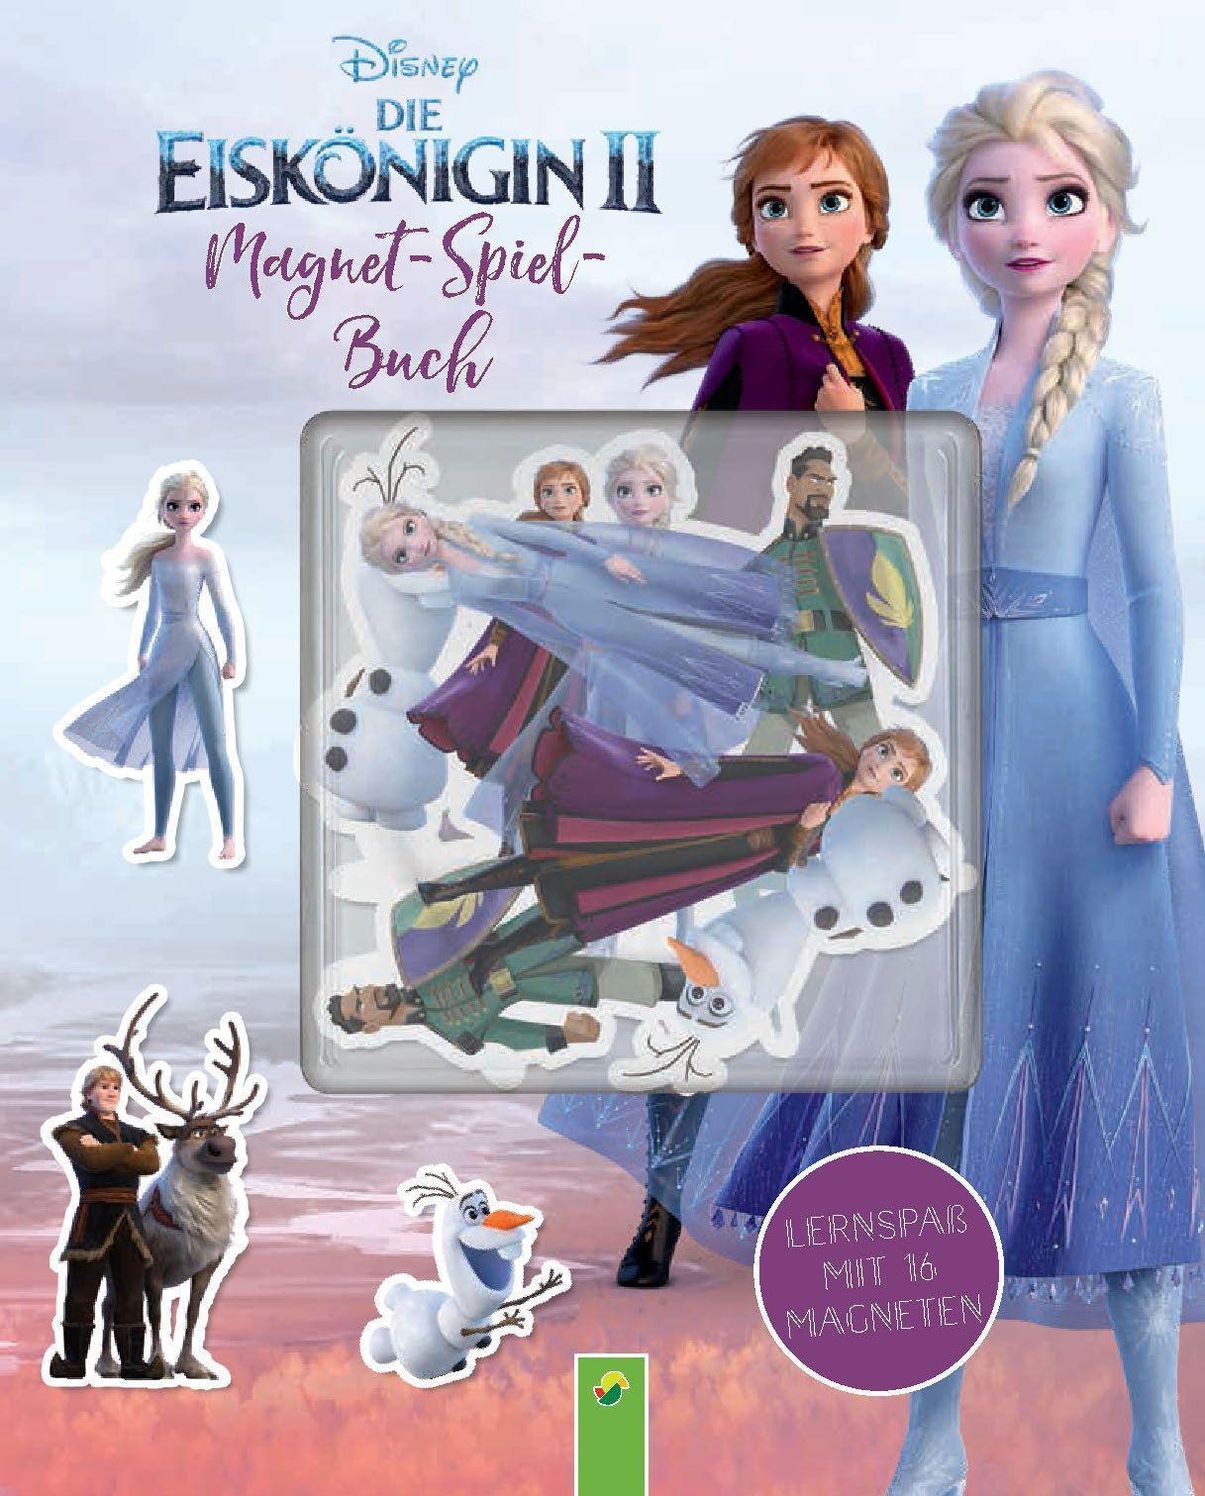 Die Eiskönigin 2 Magnet-Spiel-Buch. Frozen-Magnetbuch mit Elsa und Anna Buch